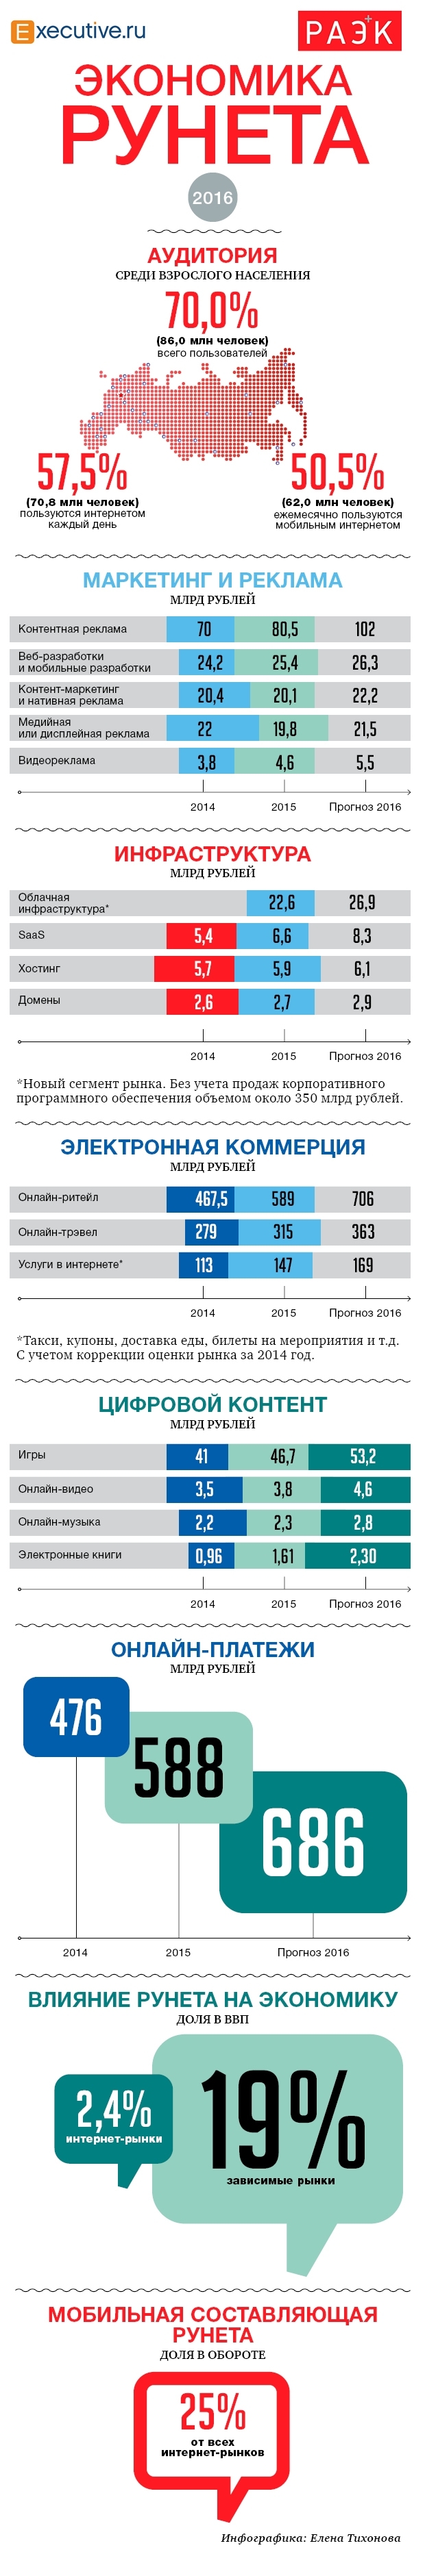 Экономика Рунета. Оборот и другие показатели интернет-сегментов в 2015-2016 году